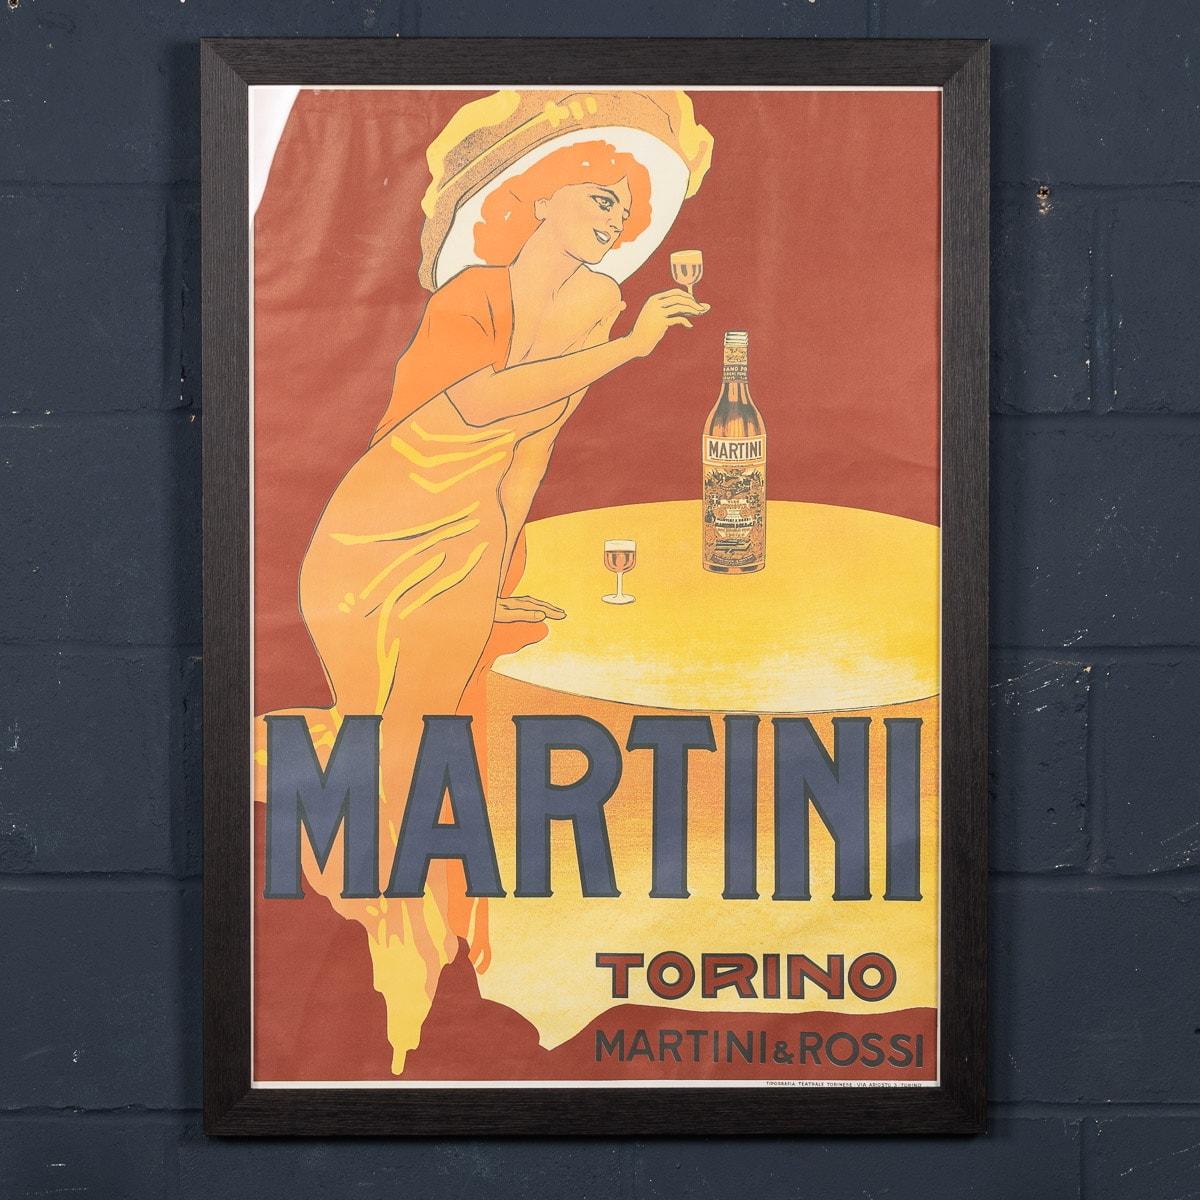 Das Plakat zeigt eine gut gekleidete, elegante Frau in einem langen Kleid und einem großen Hut. Sie stößt mit einem Glas Martini auf ihren Begleiter an, der nicht auf dem Plakat zu sehen ist. Die Martini-Flasche, deren Label akribisch nachgebildet